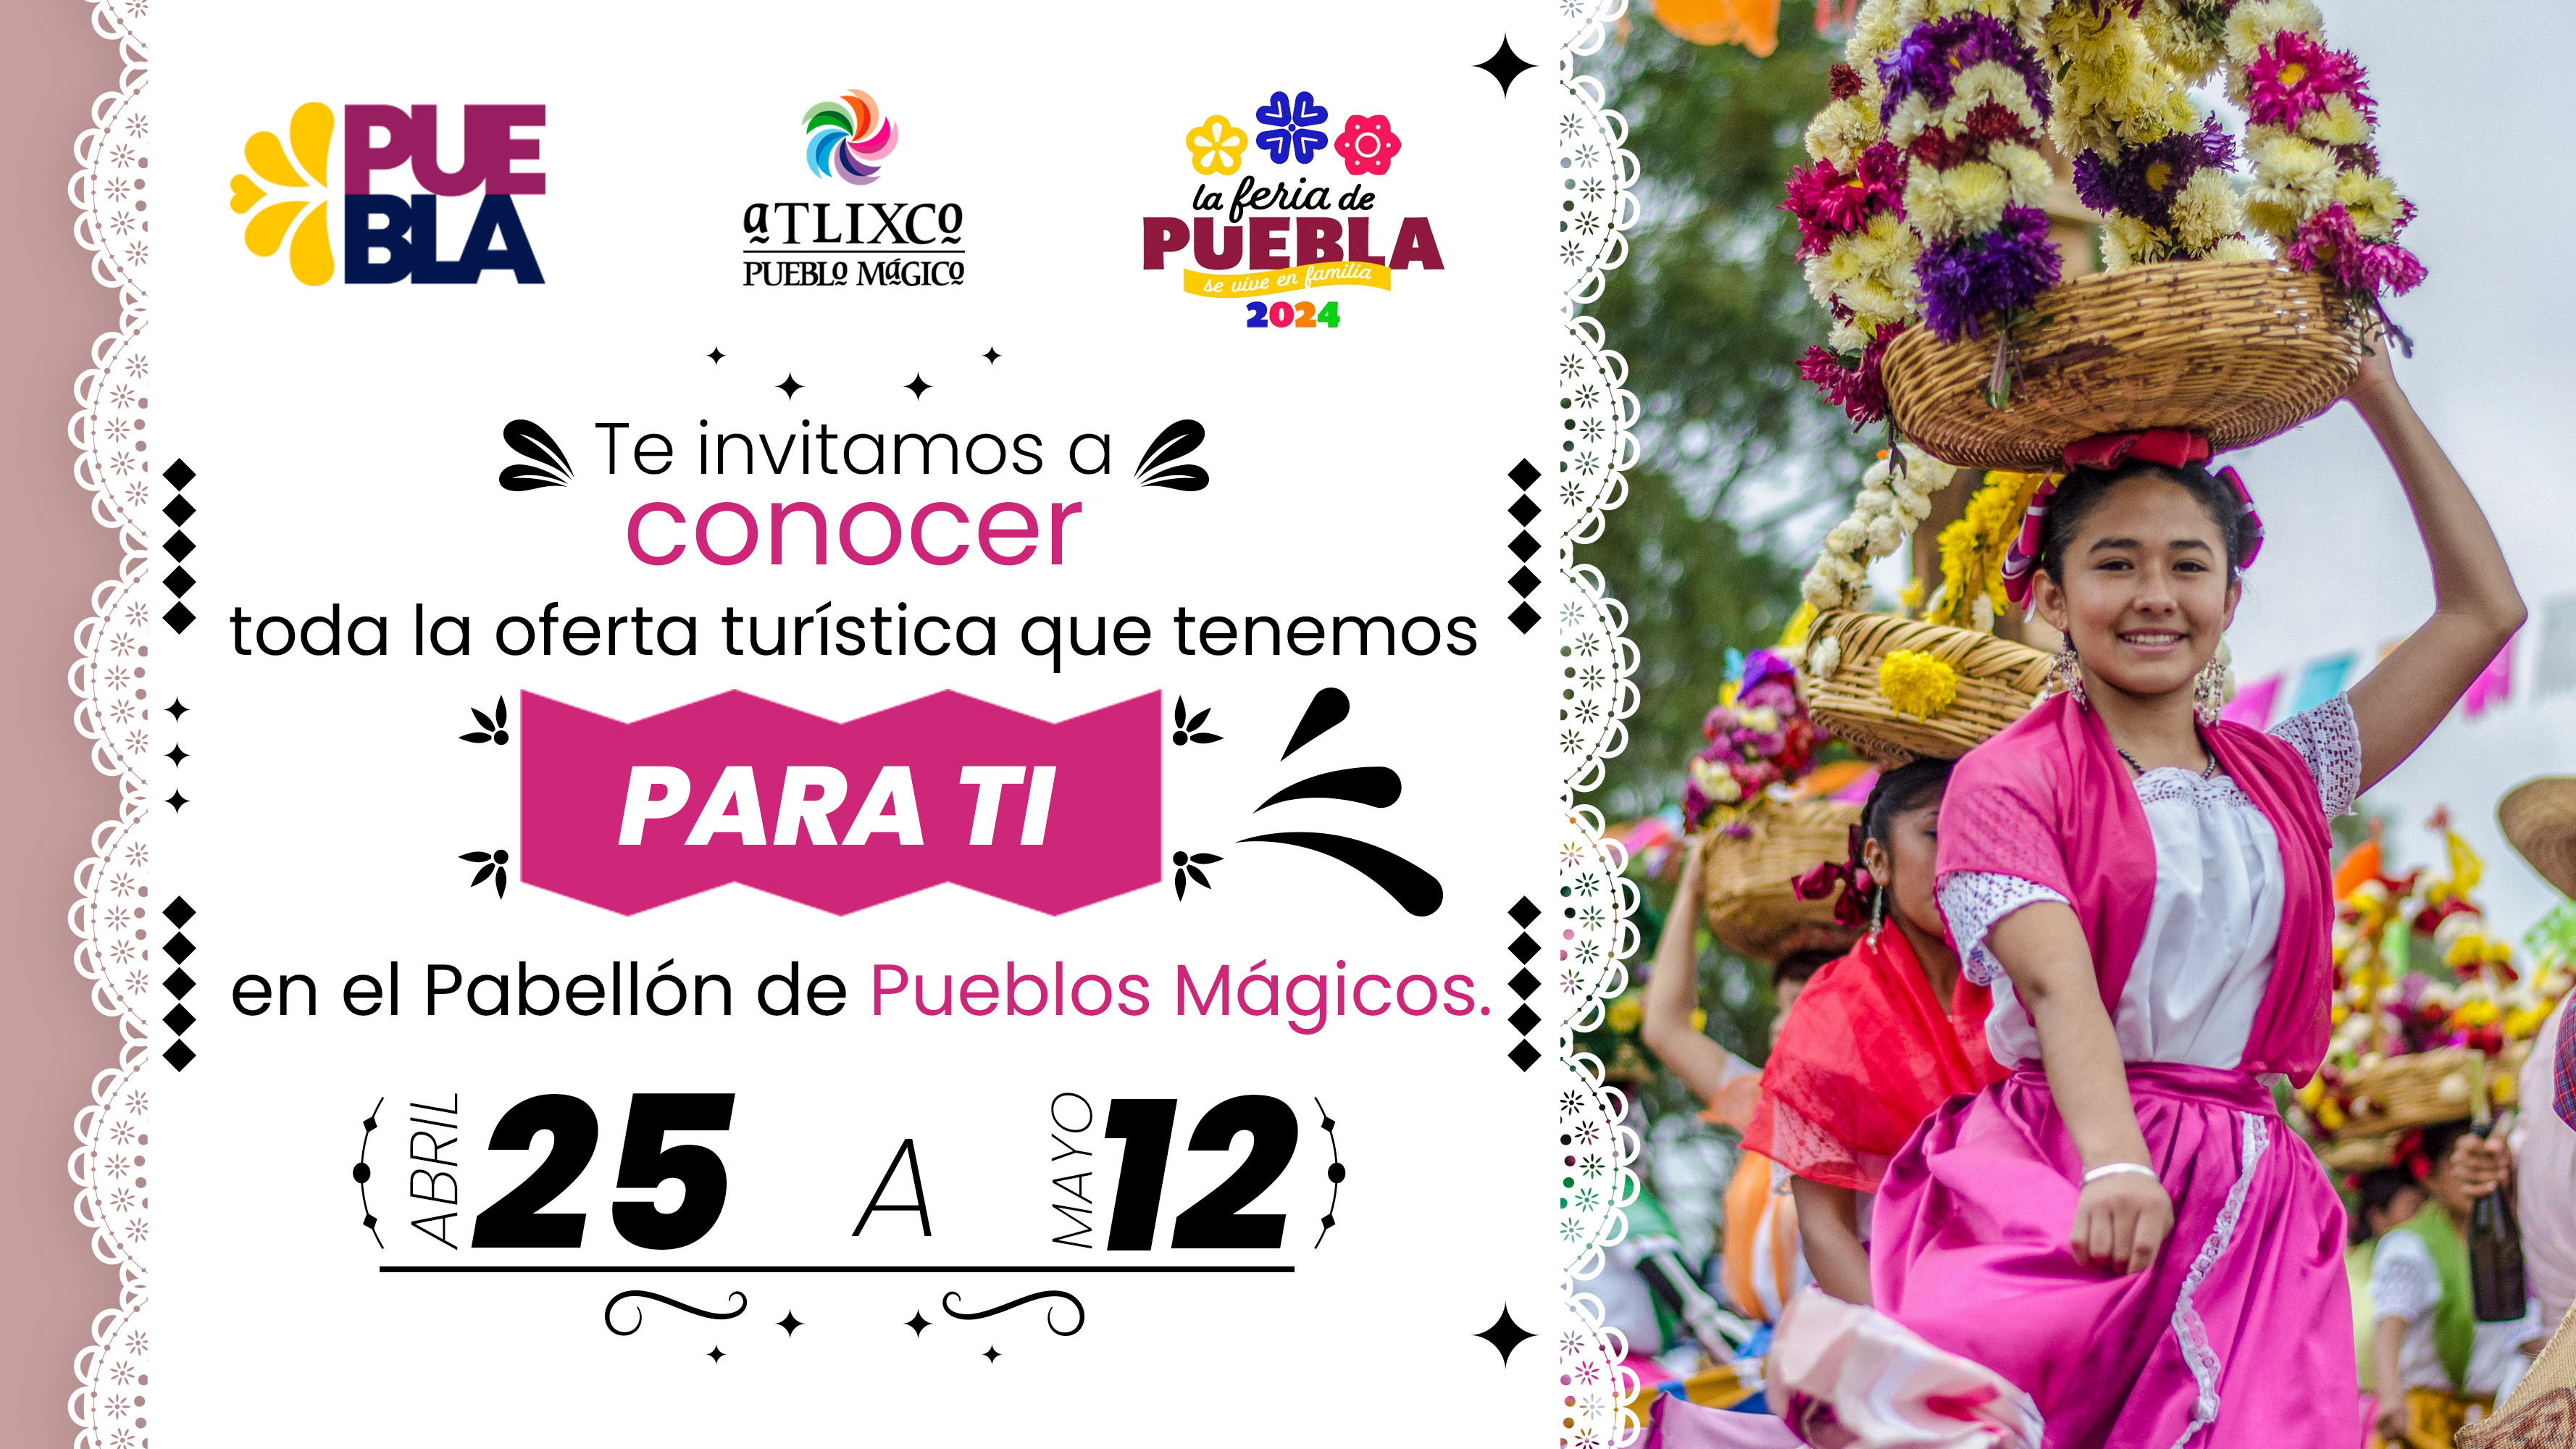 Atlixco estará presente en el Pabellón de Pueblos Mágicos en la Feria de Puebla 2024